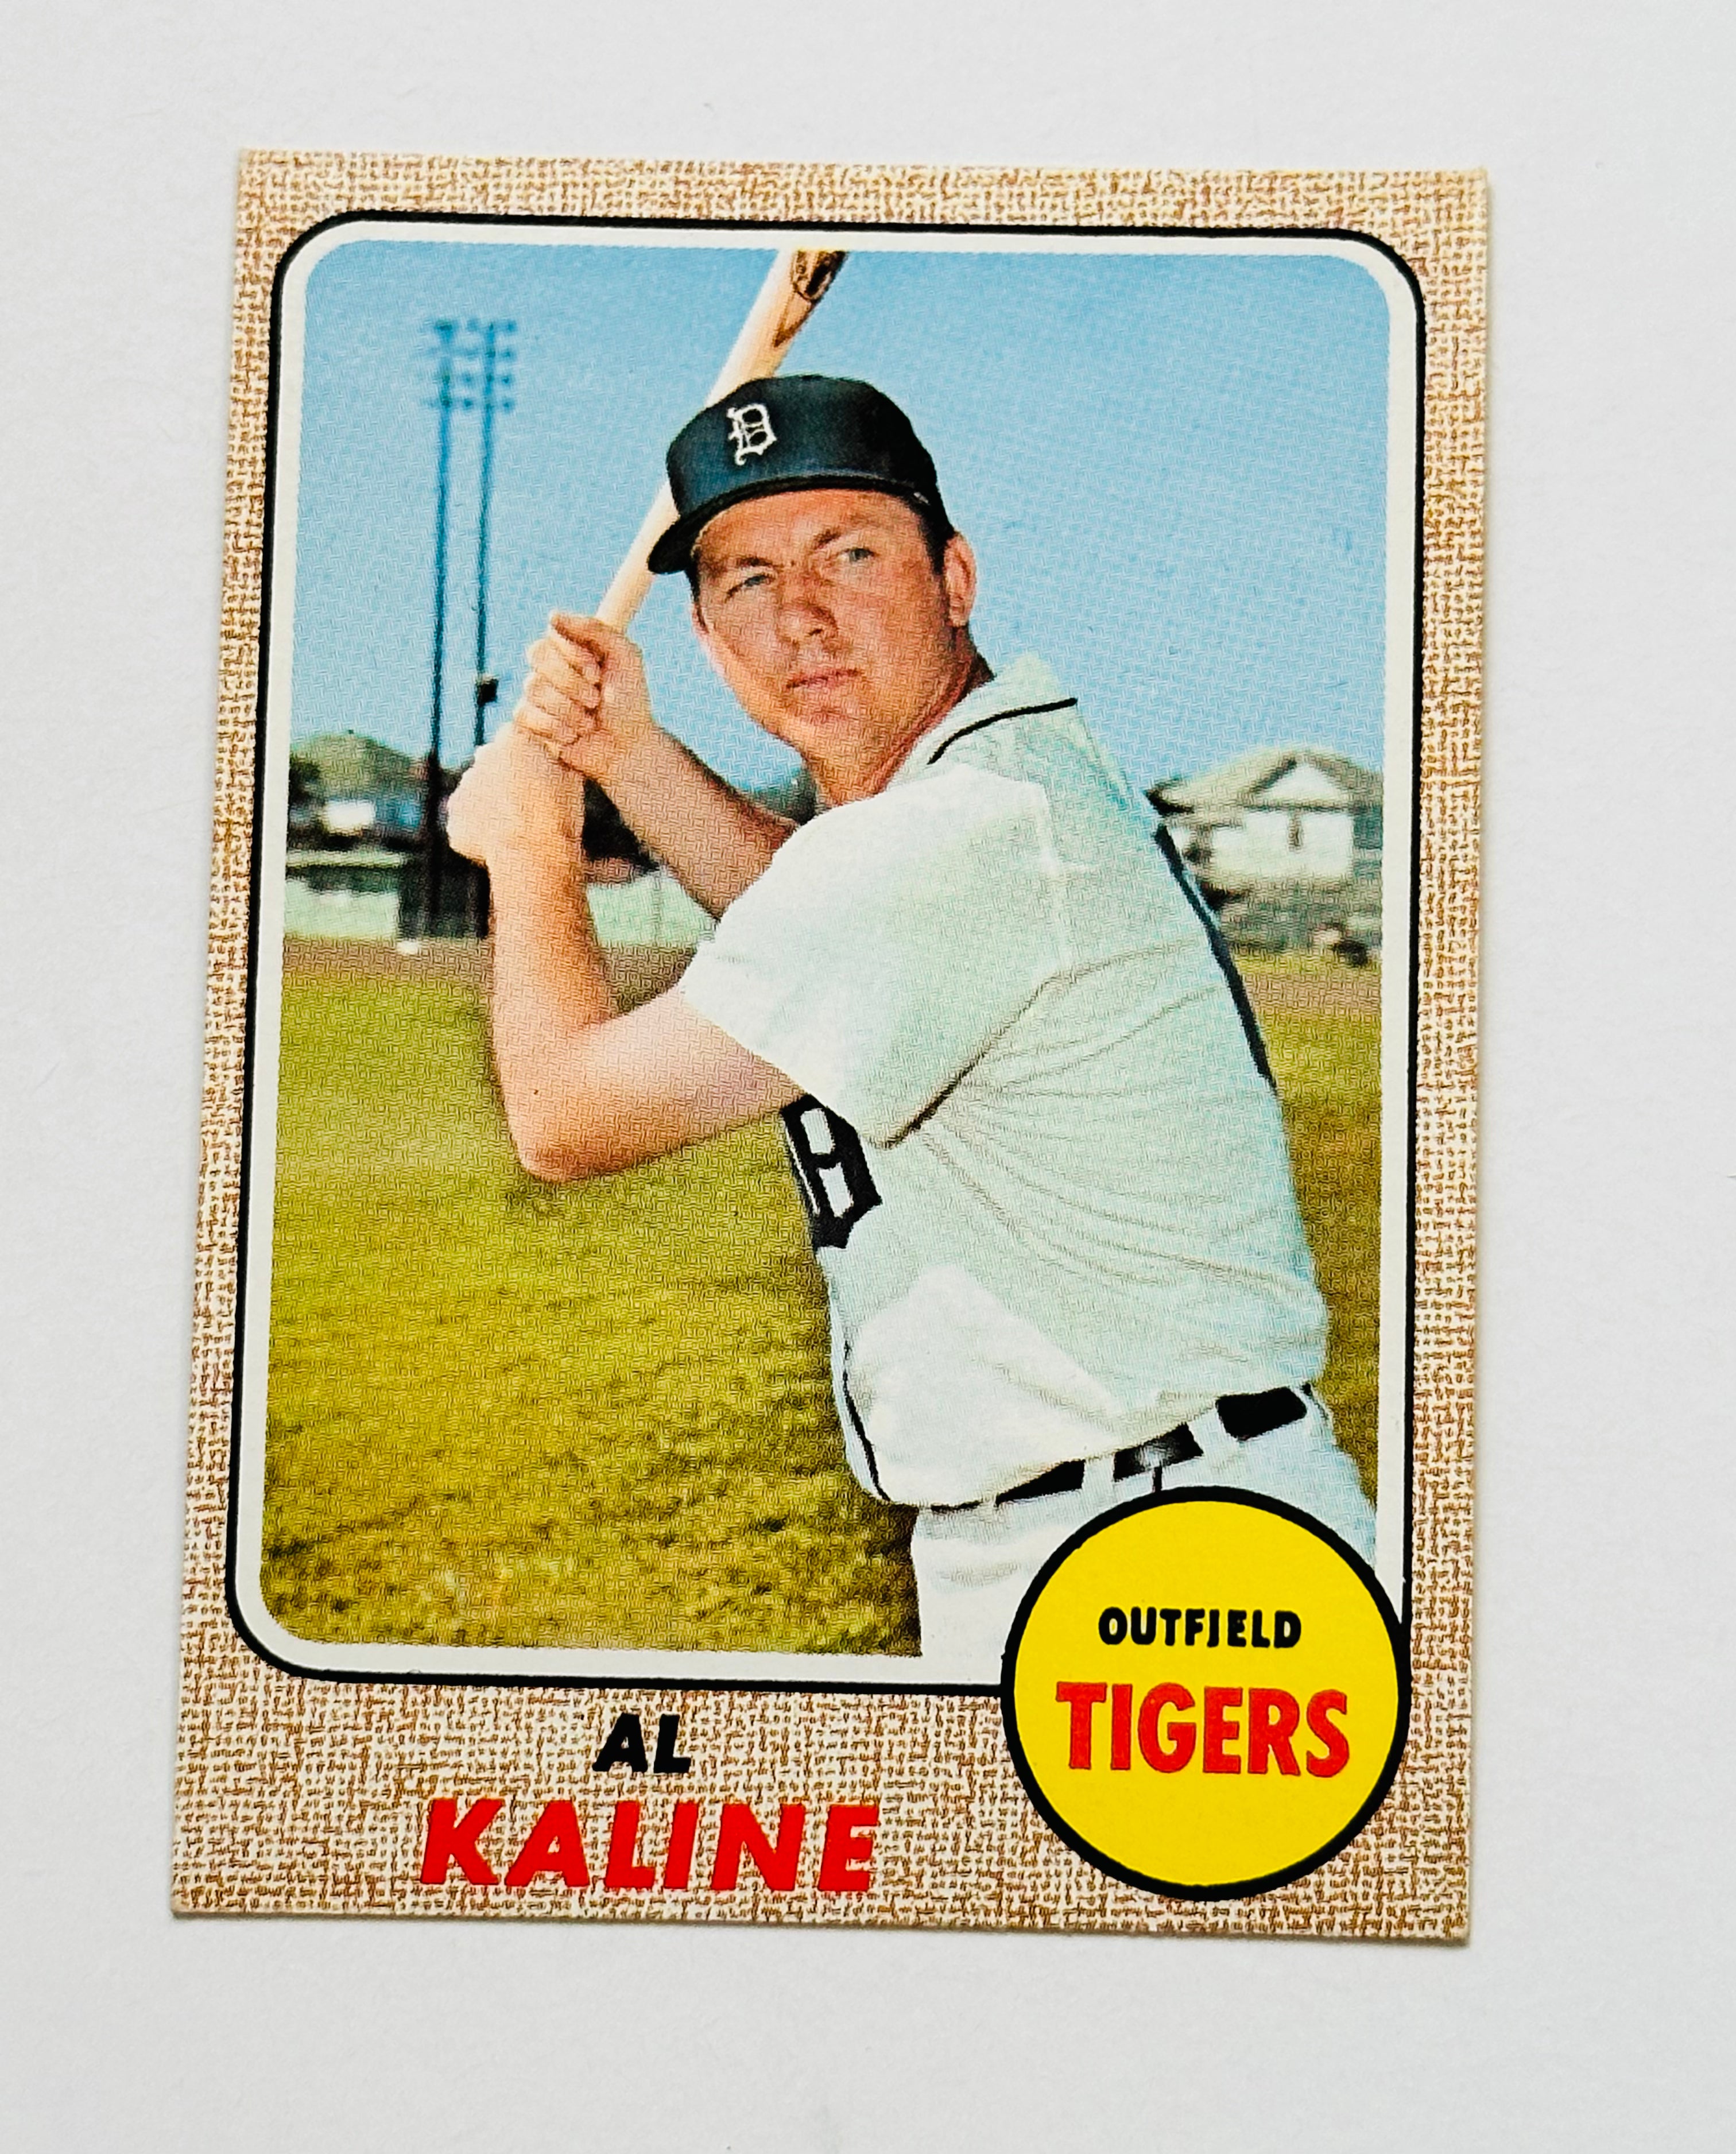 1968 Topps Al Kaline high grade condition baseball card